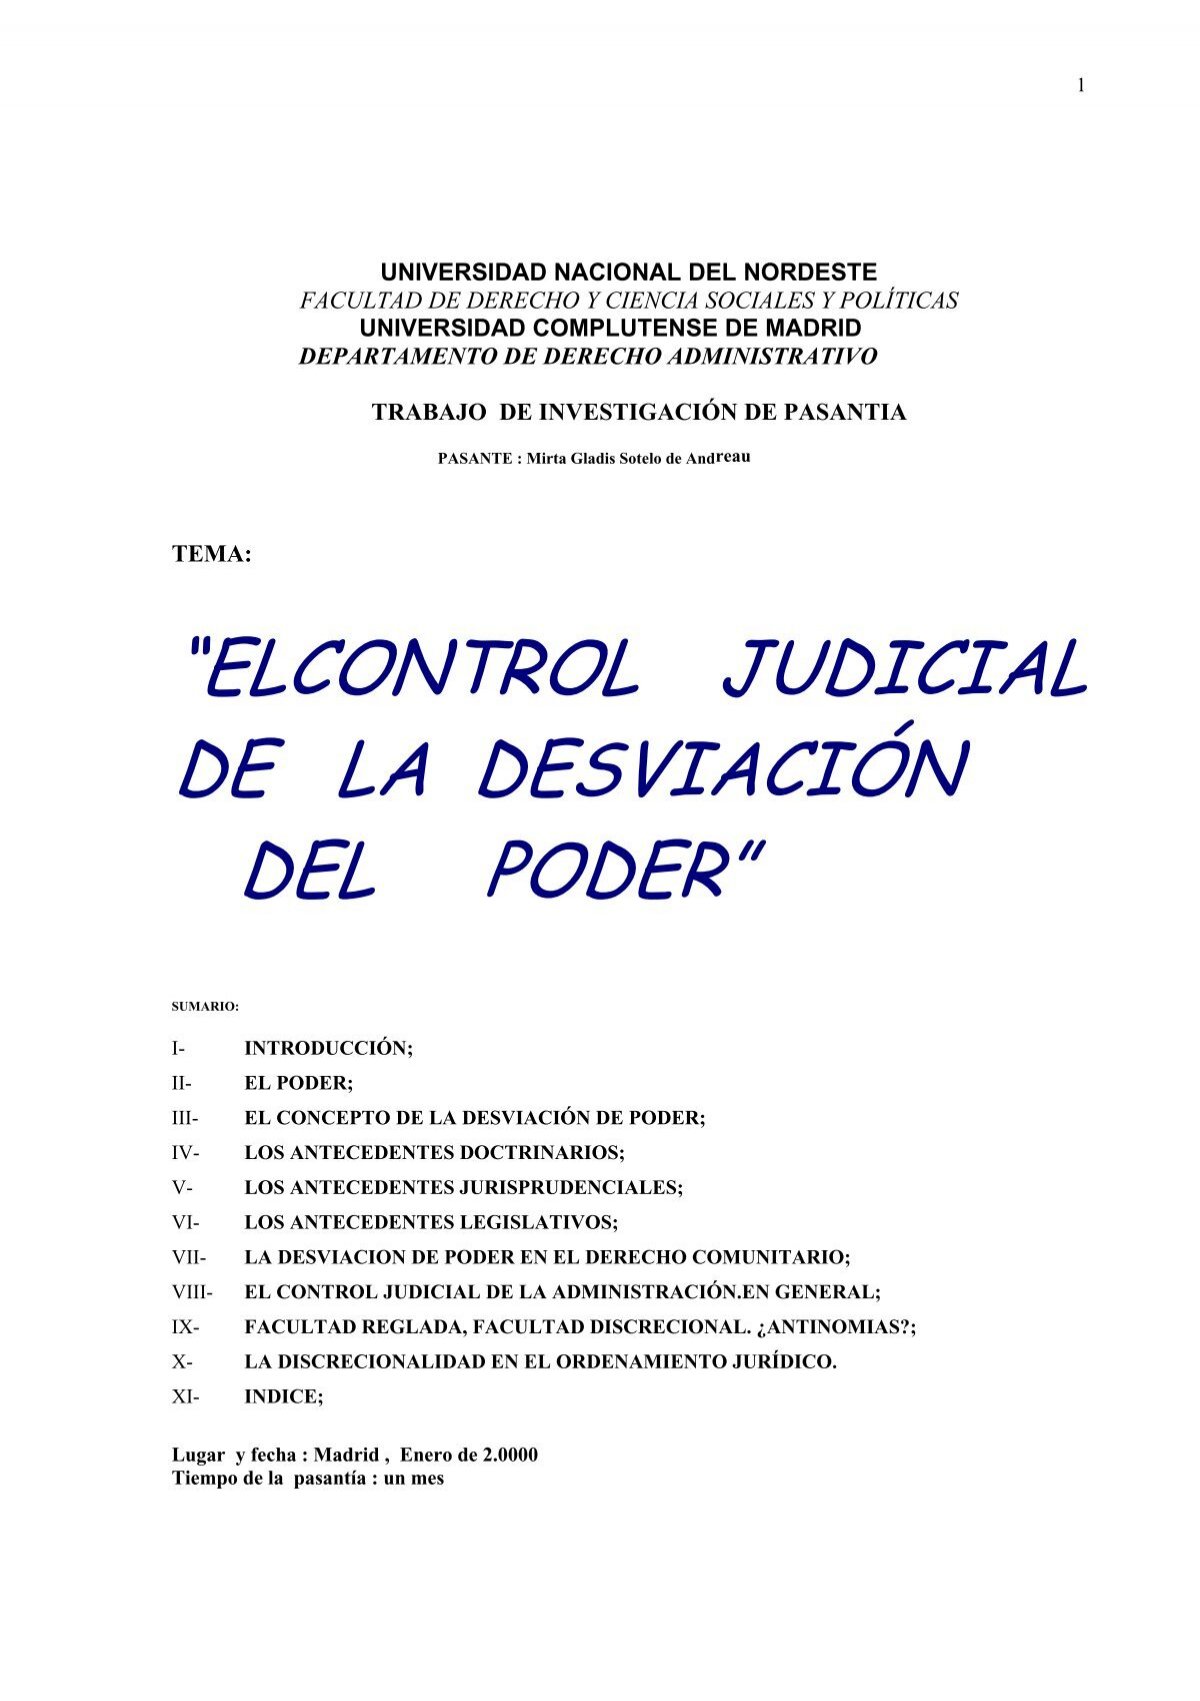 ELCONTROL JUDICIAL DE LA DESVIACIÓN DEL PODER”